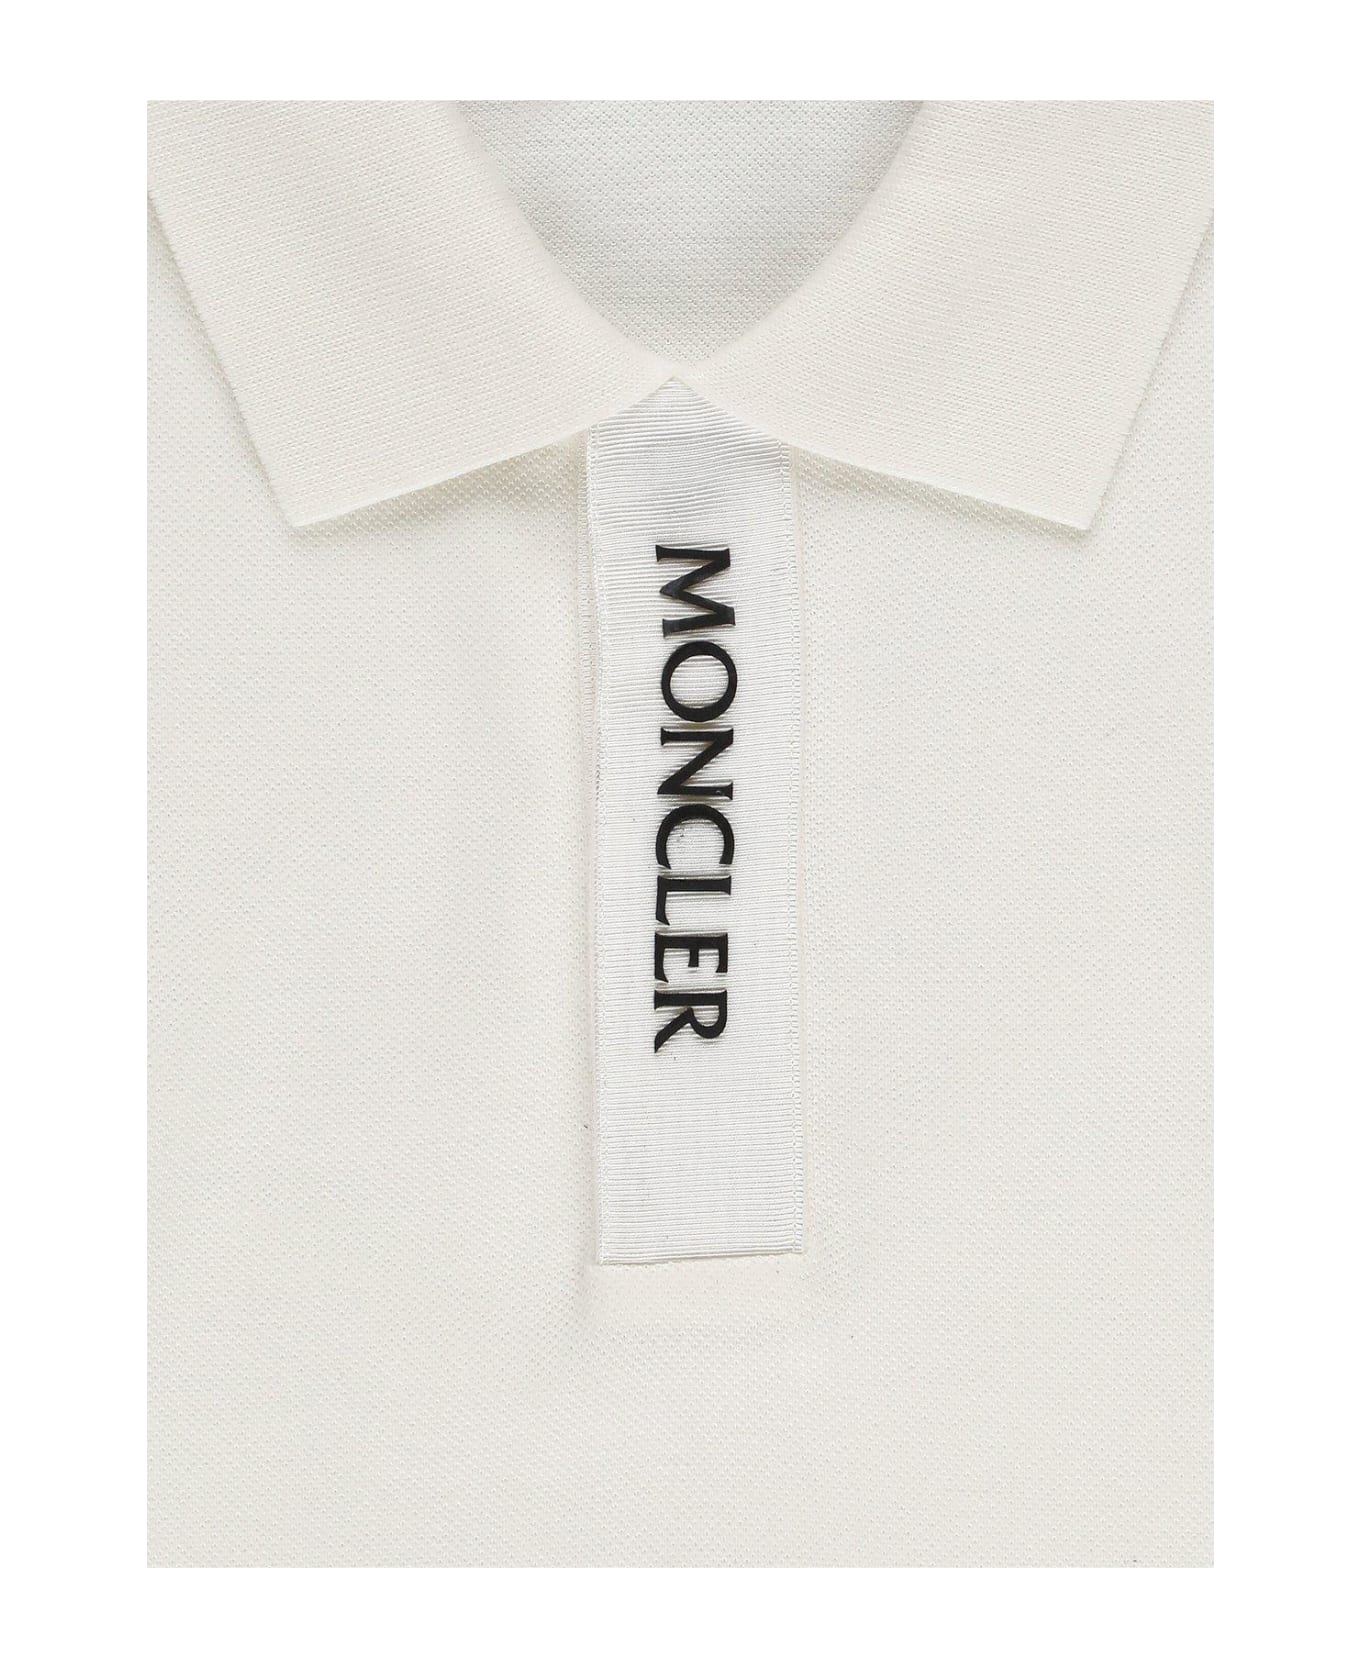 Moncler Logo Detailed Short Sleeved Polo Shirt - White